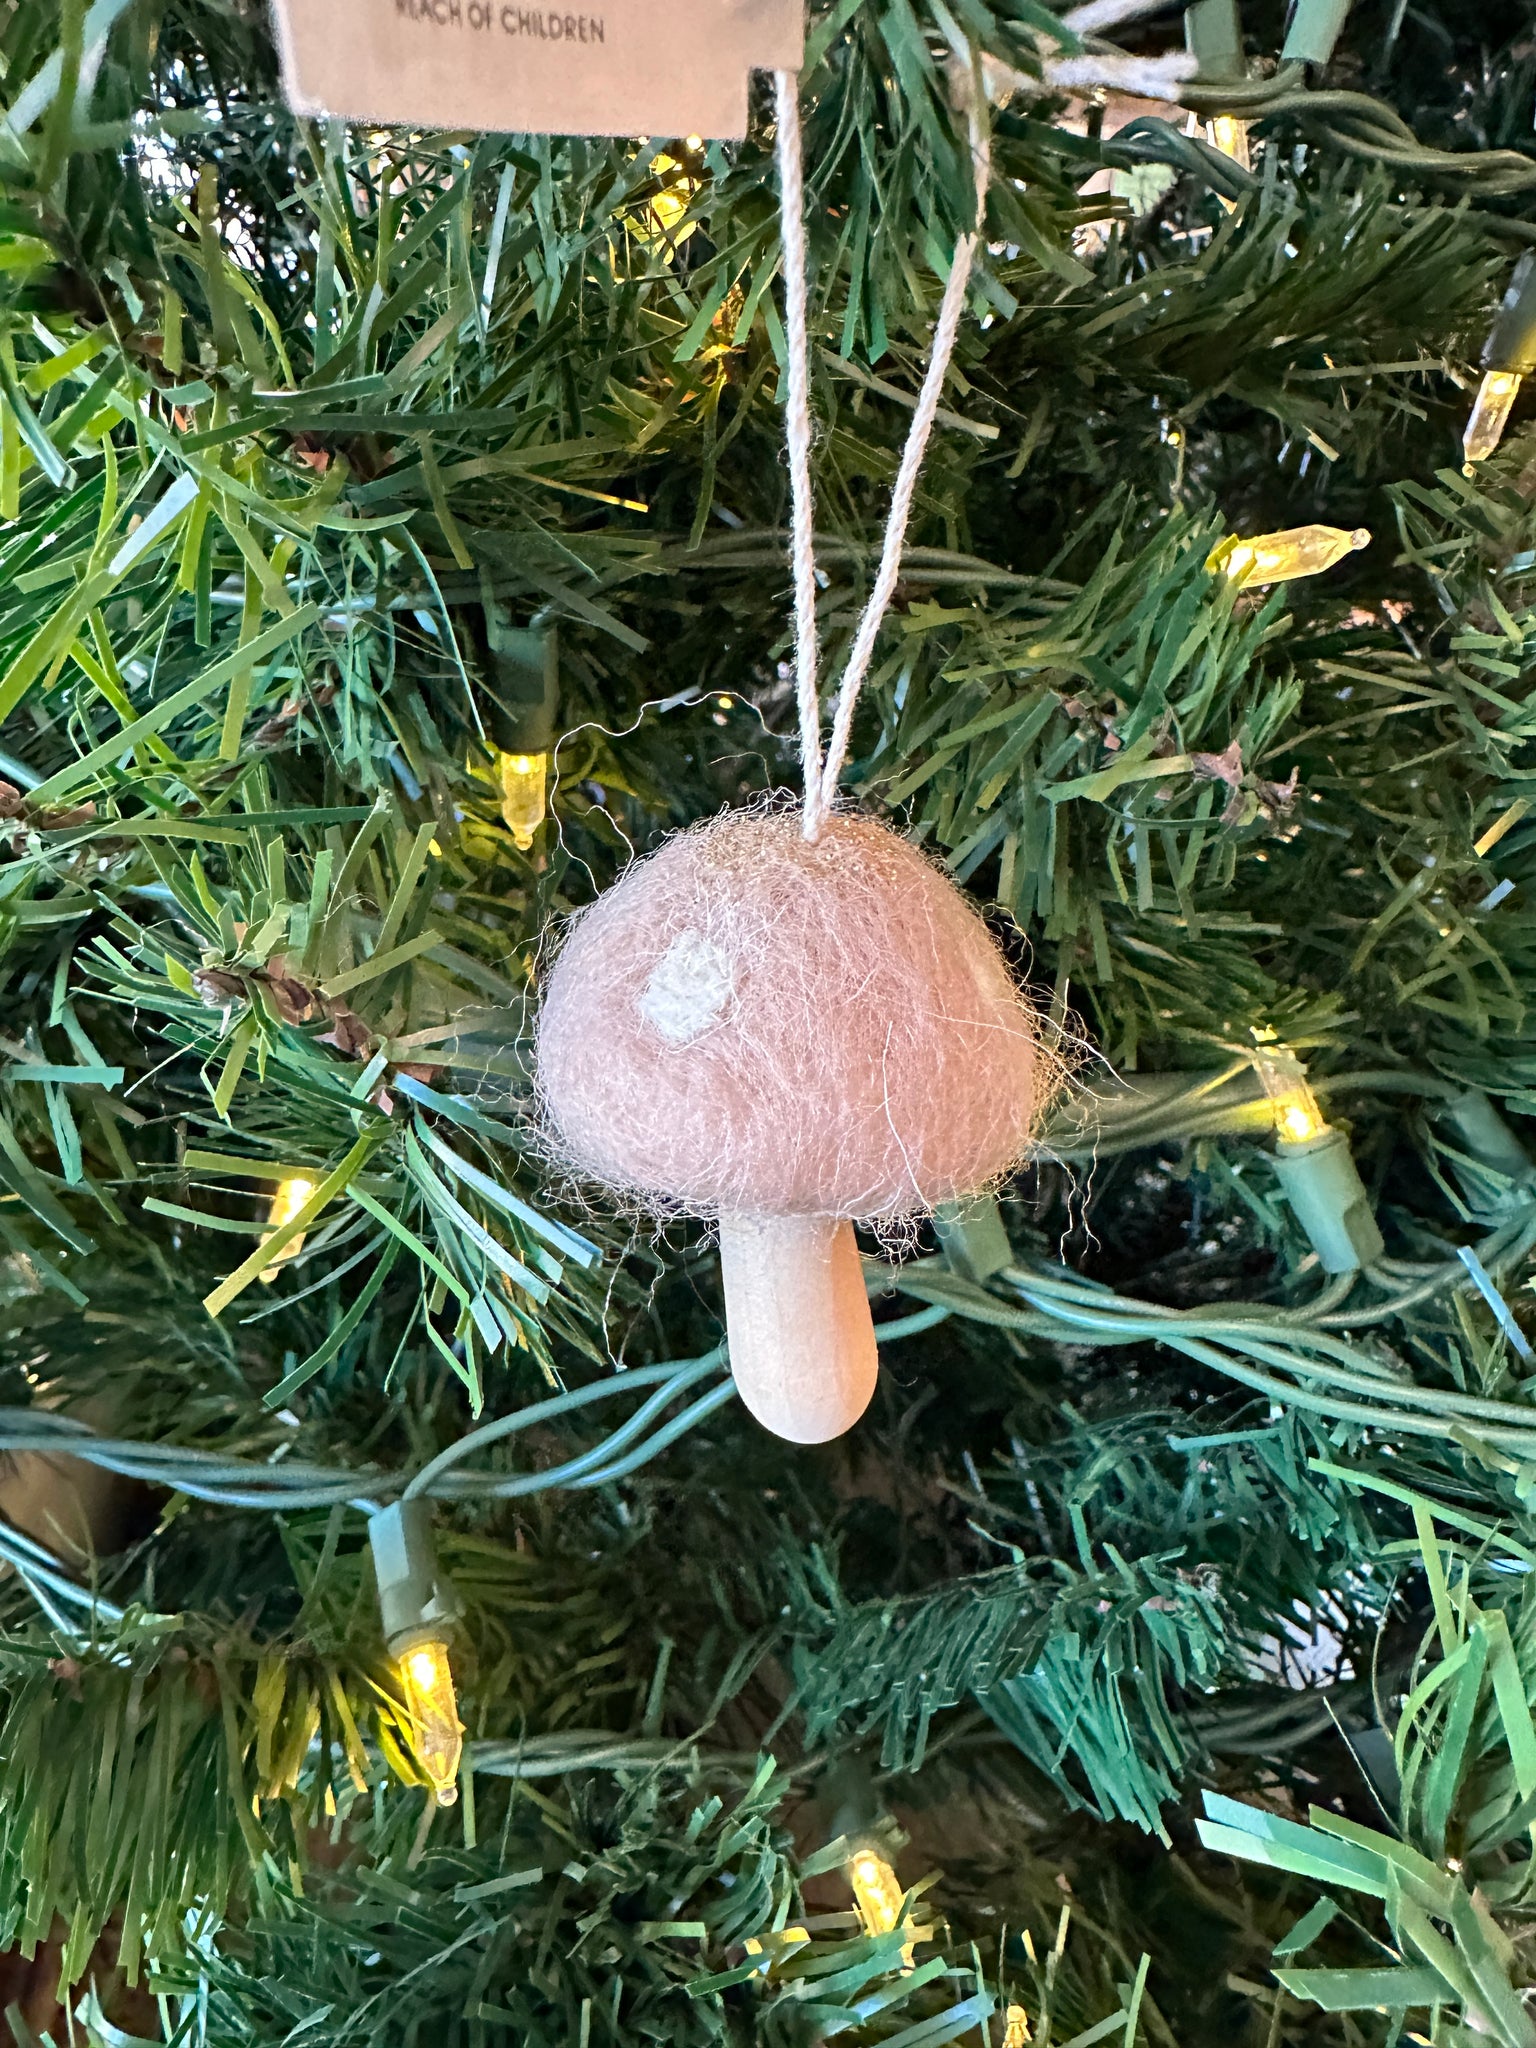 Wool and Wood Mushroom Ornament